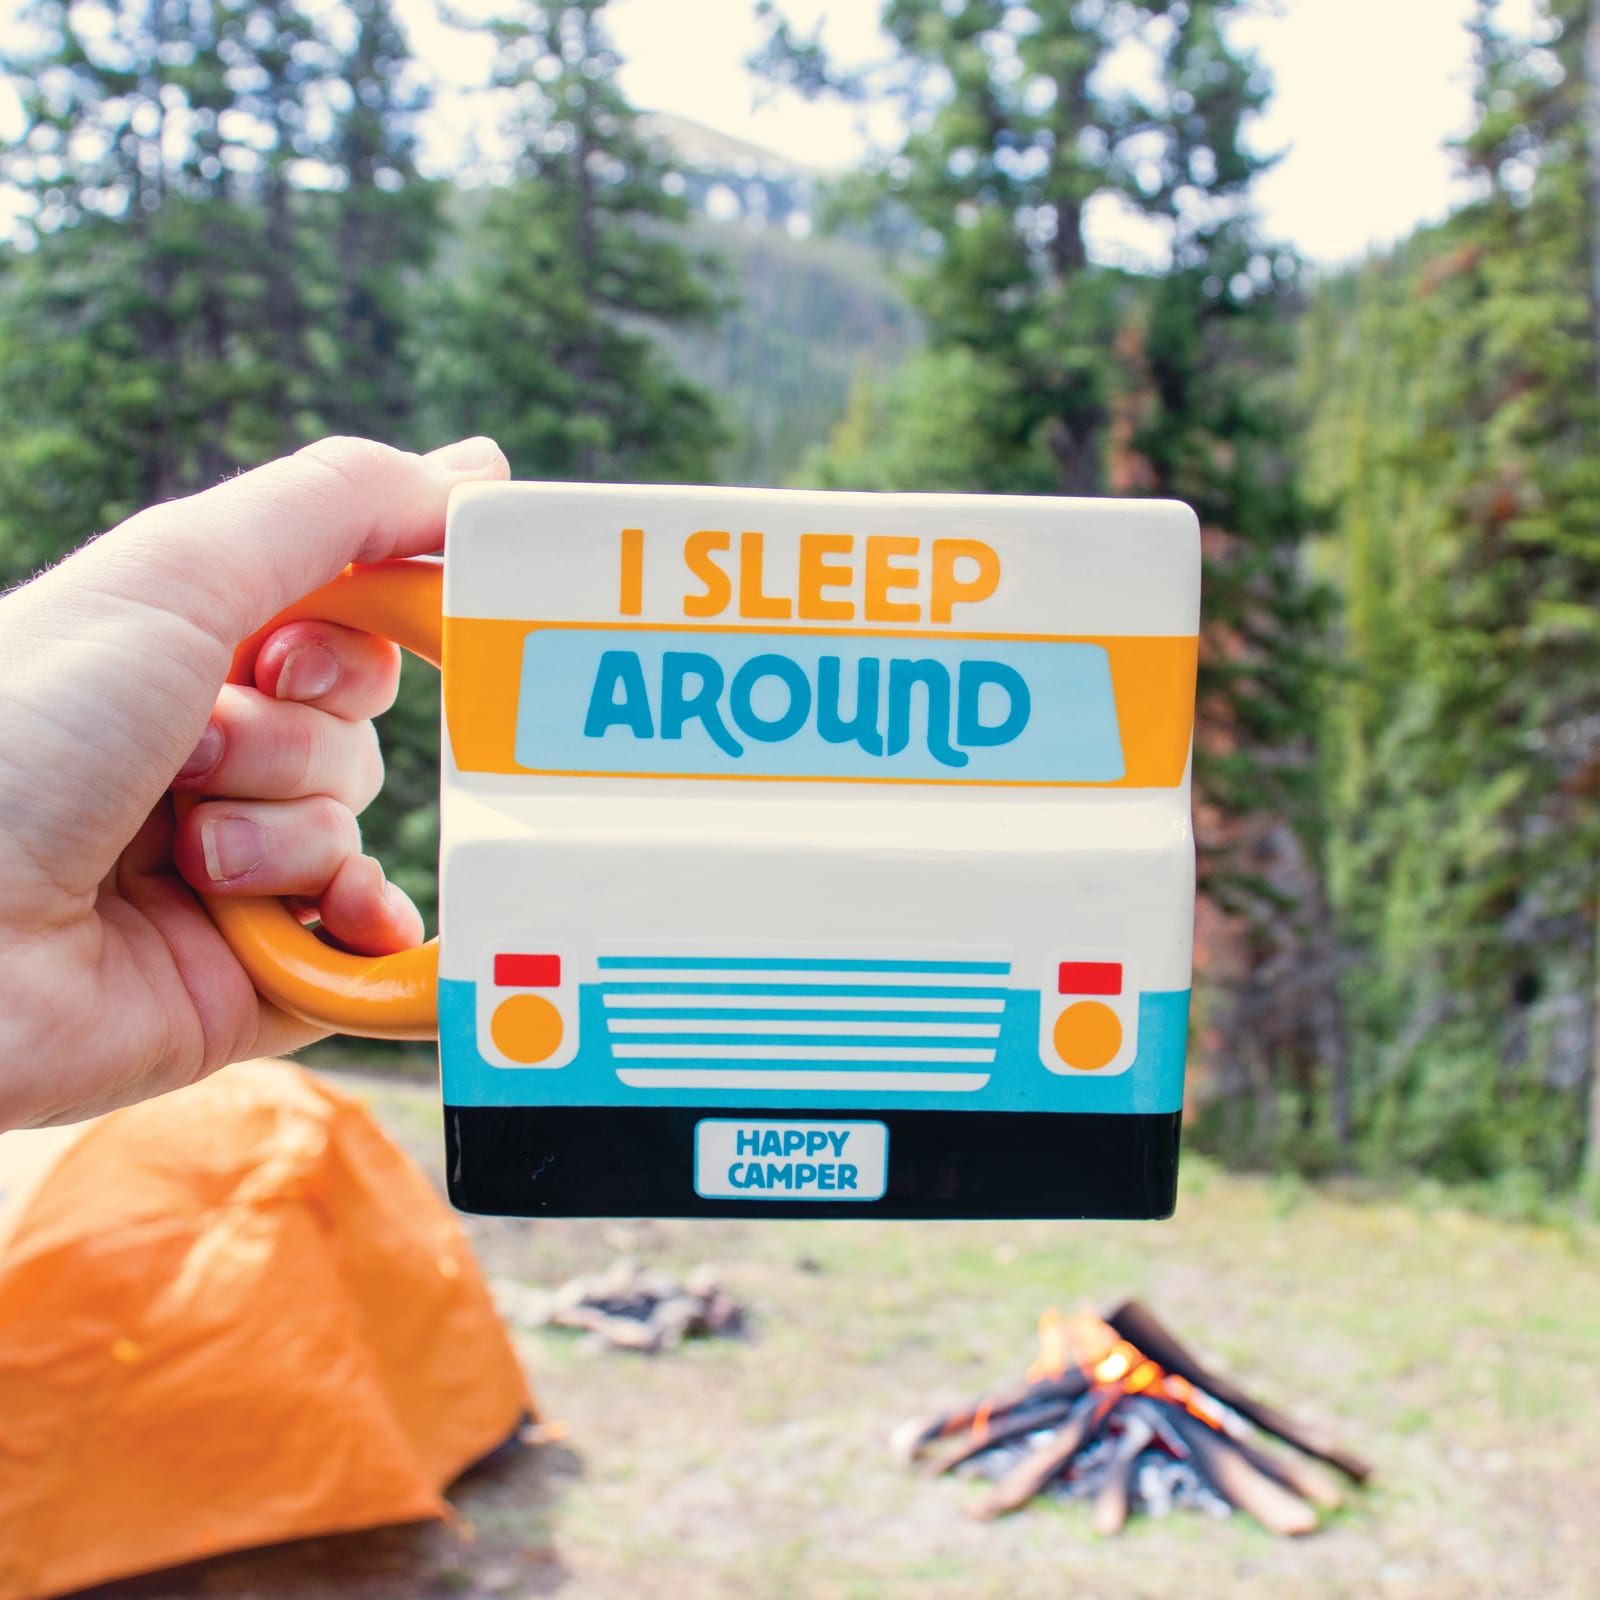 "I sleep Around" RV Camper Mug